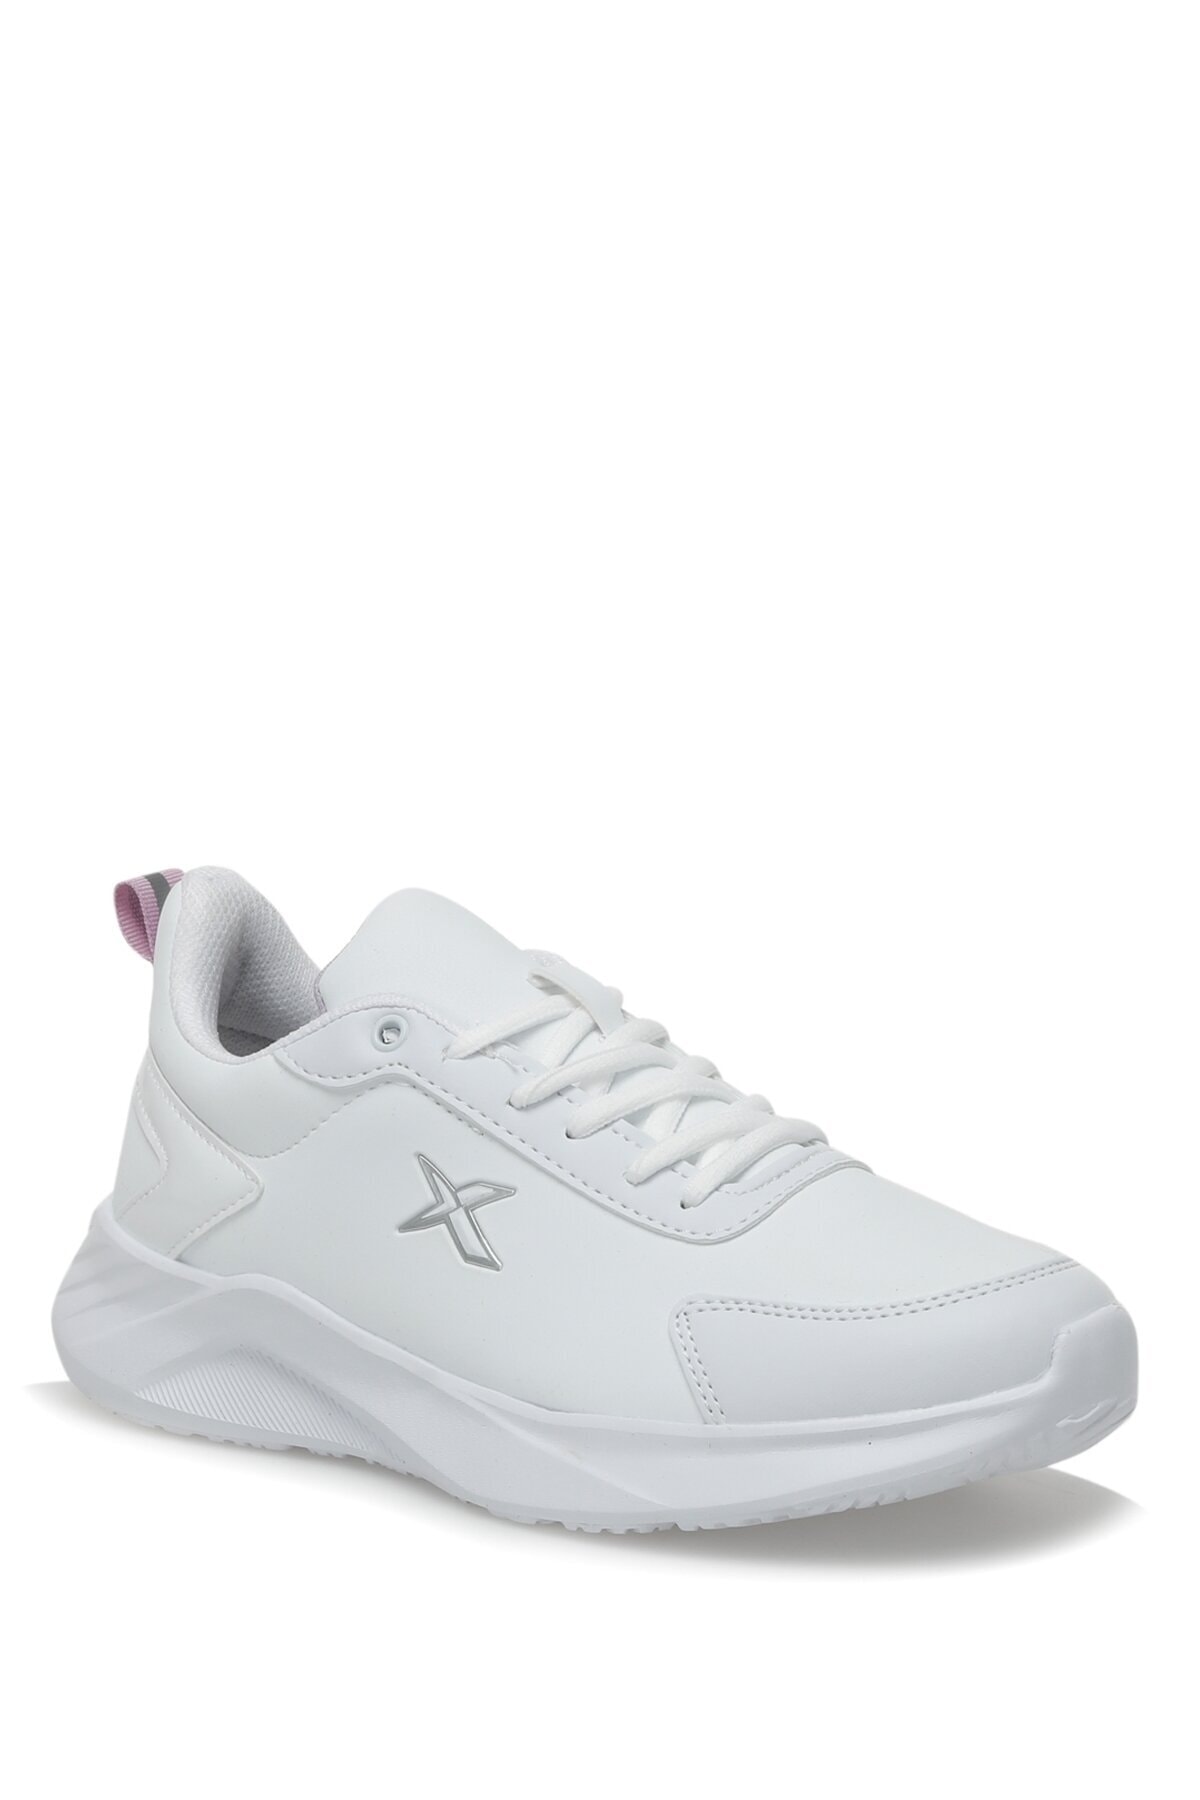 Kinetix Pace Pu W 2pr Beyaz Kadın Sneaker